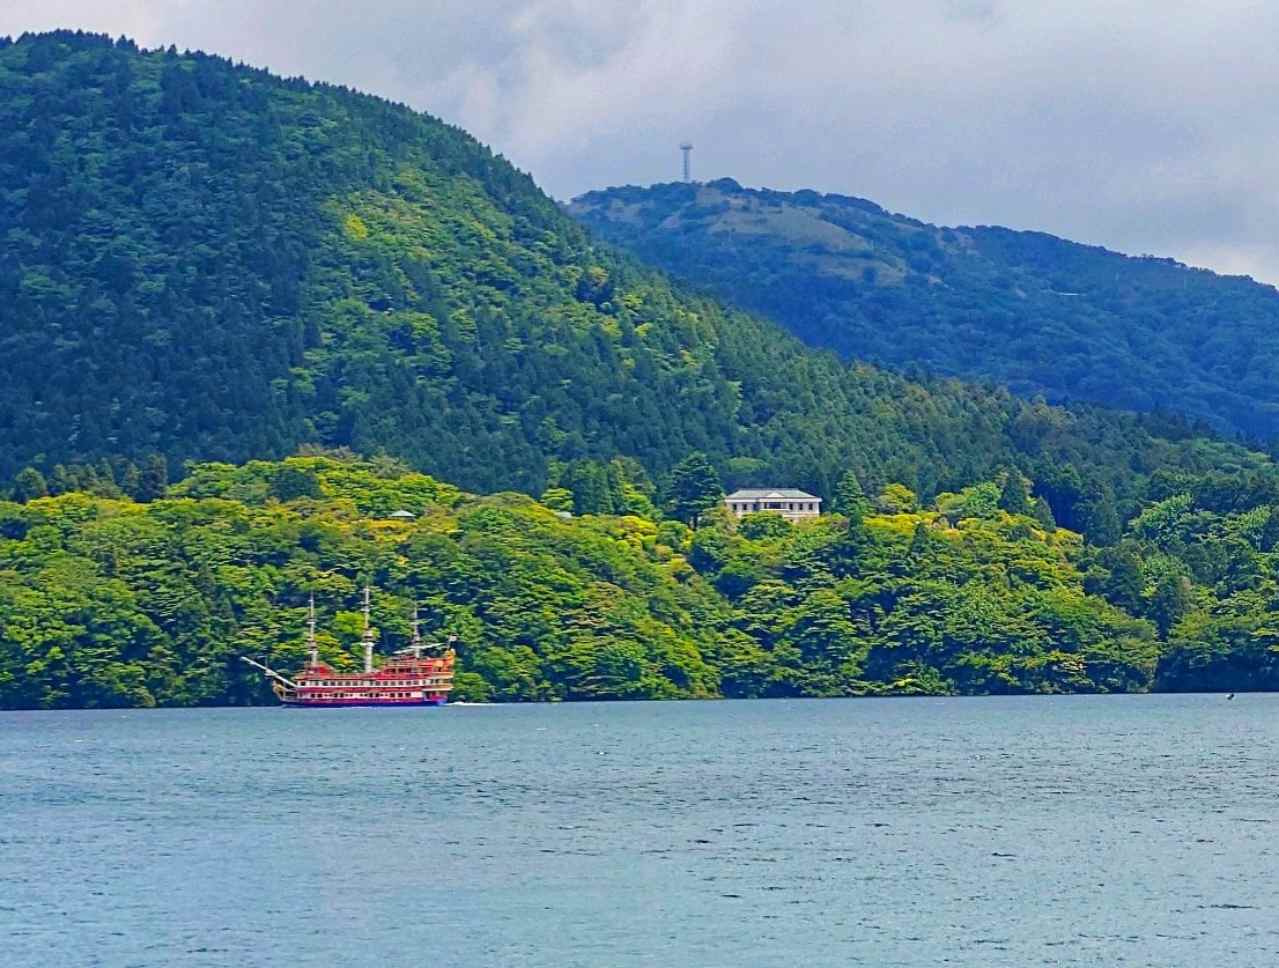 神奈川県足柄下郡・「箱根遊船 SORAKAZE」からの眺め